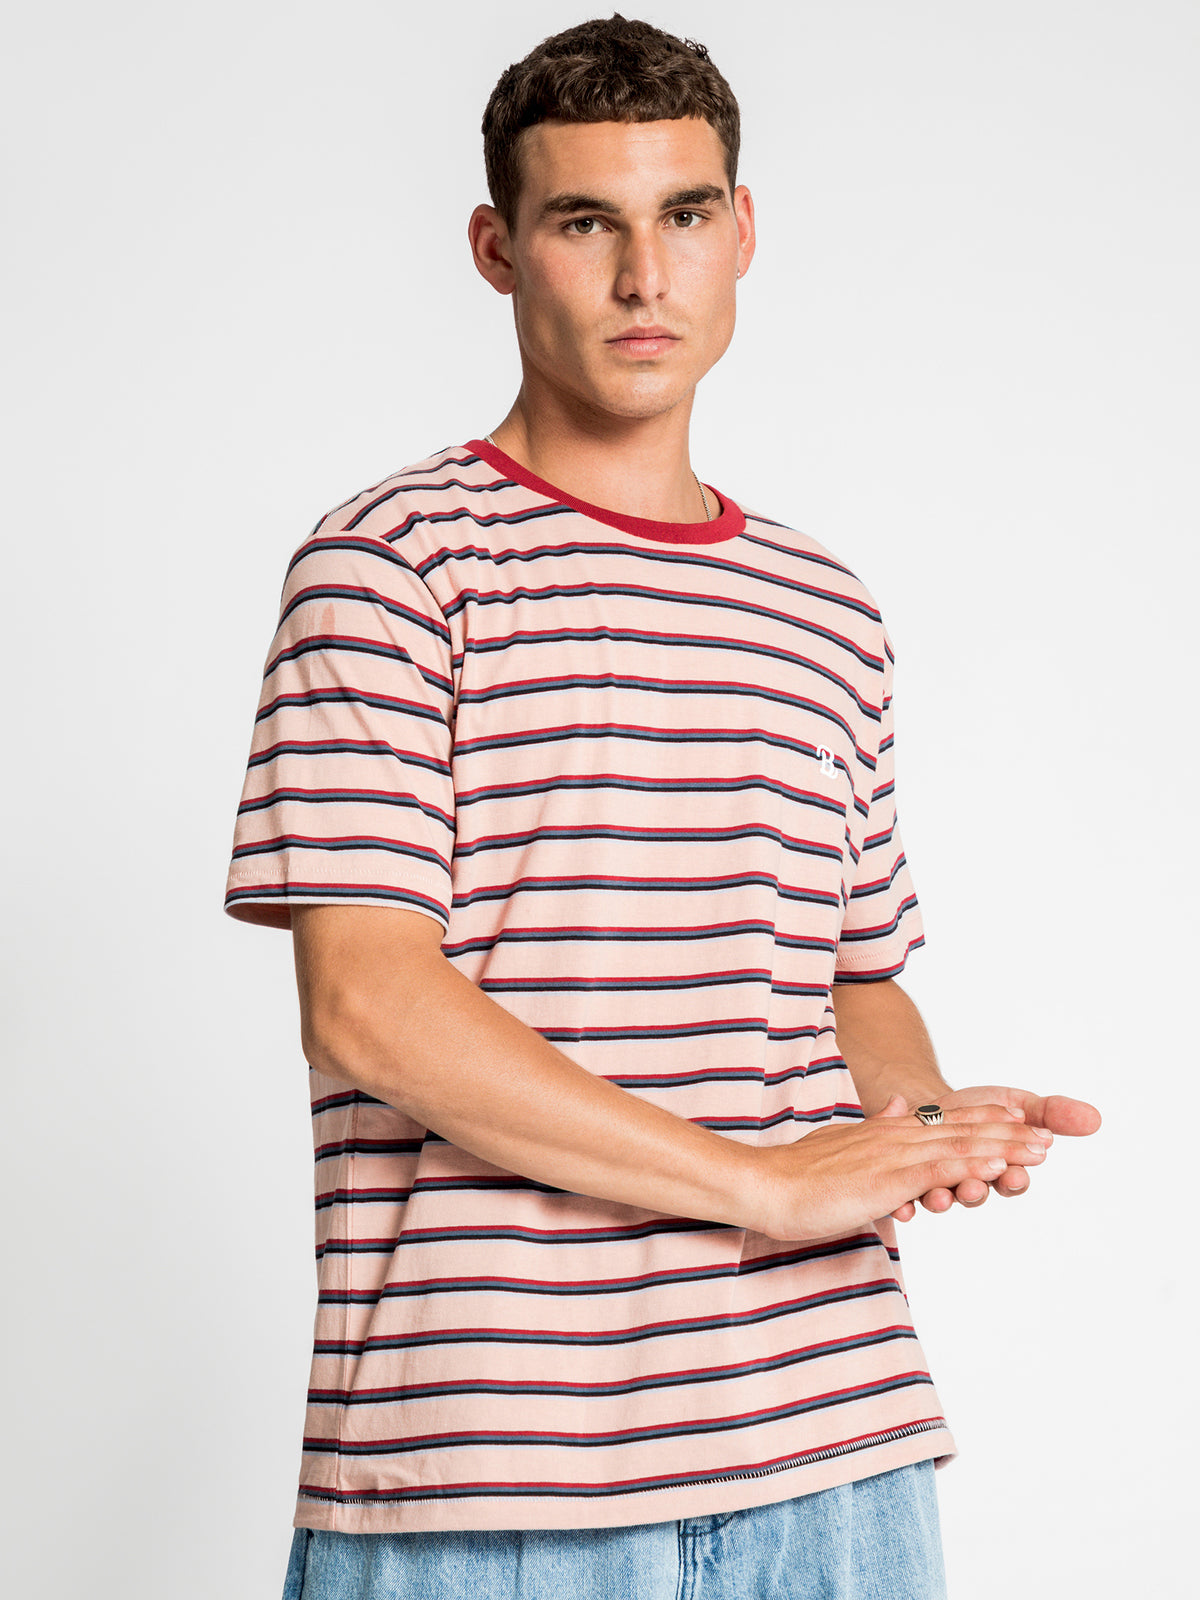 Schooled T-Shirt in Peach Stripe